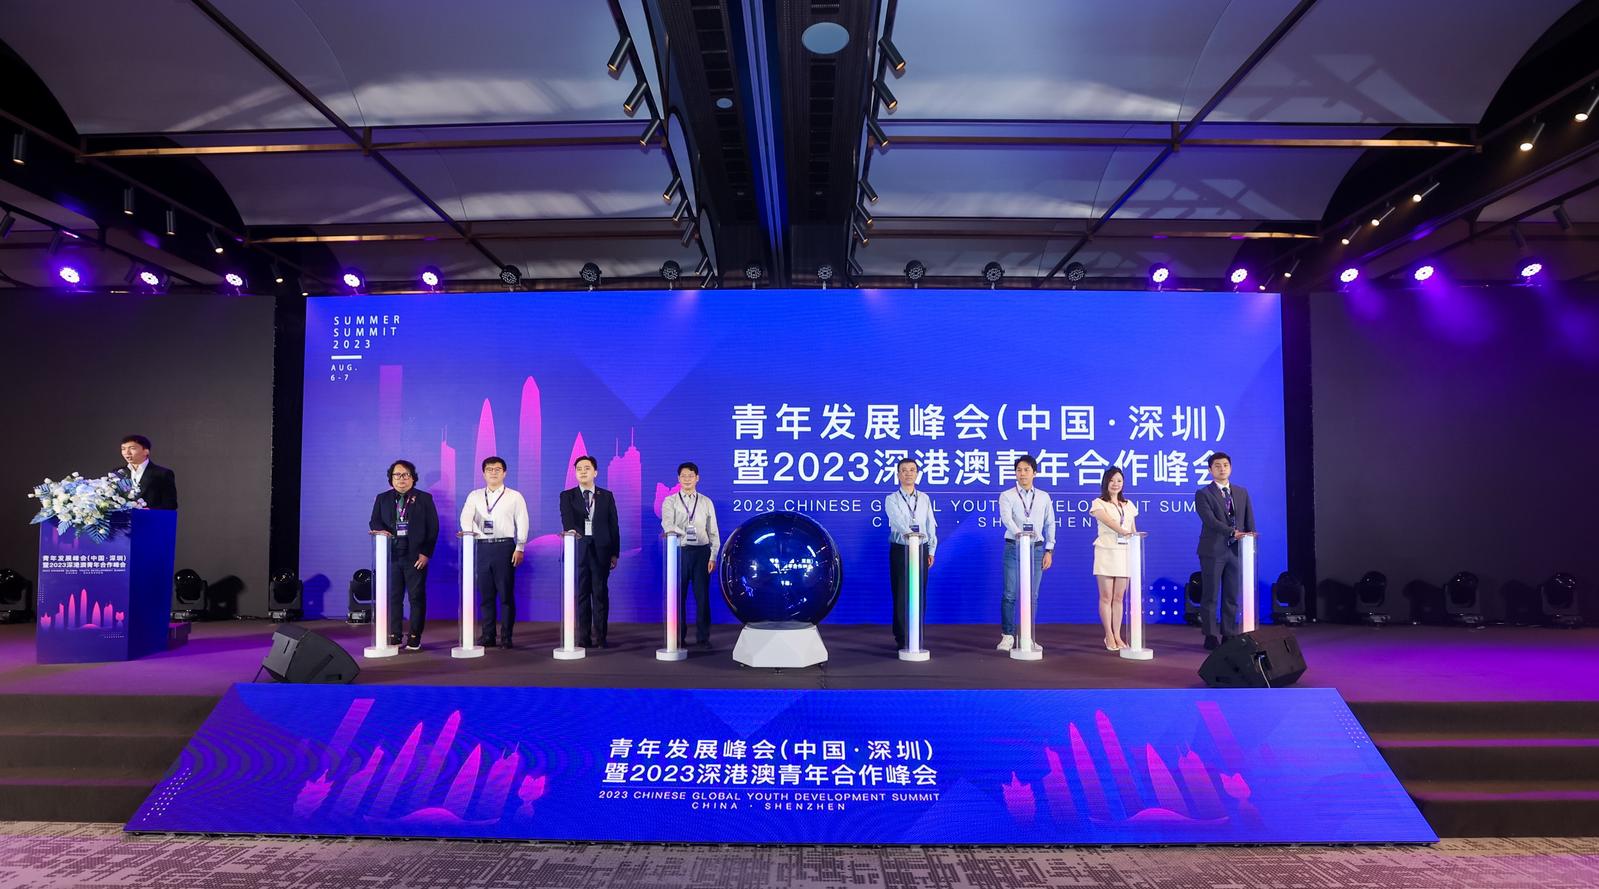 助力海外人才引育 青年发展峰会暨2023深港澳青年合作峰会在深圳举办